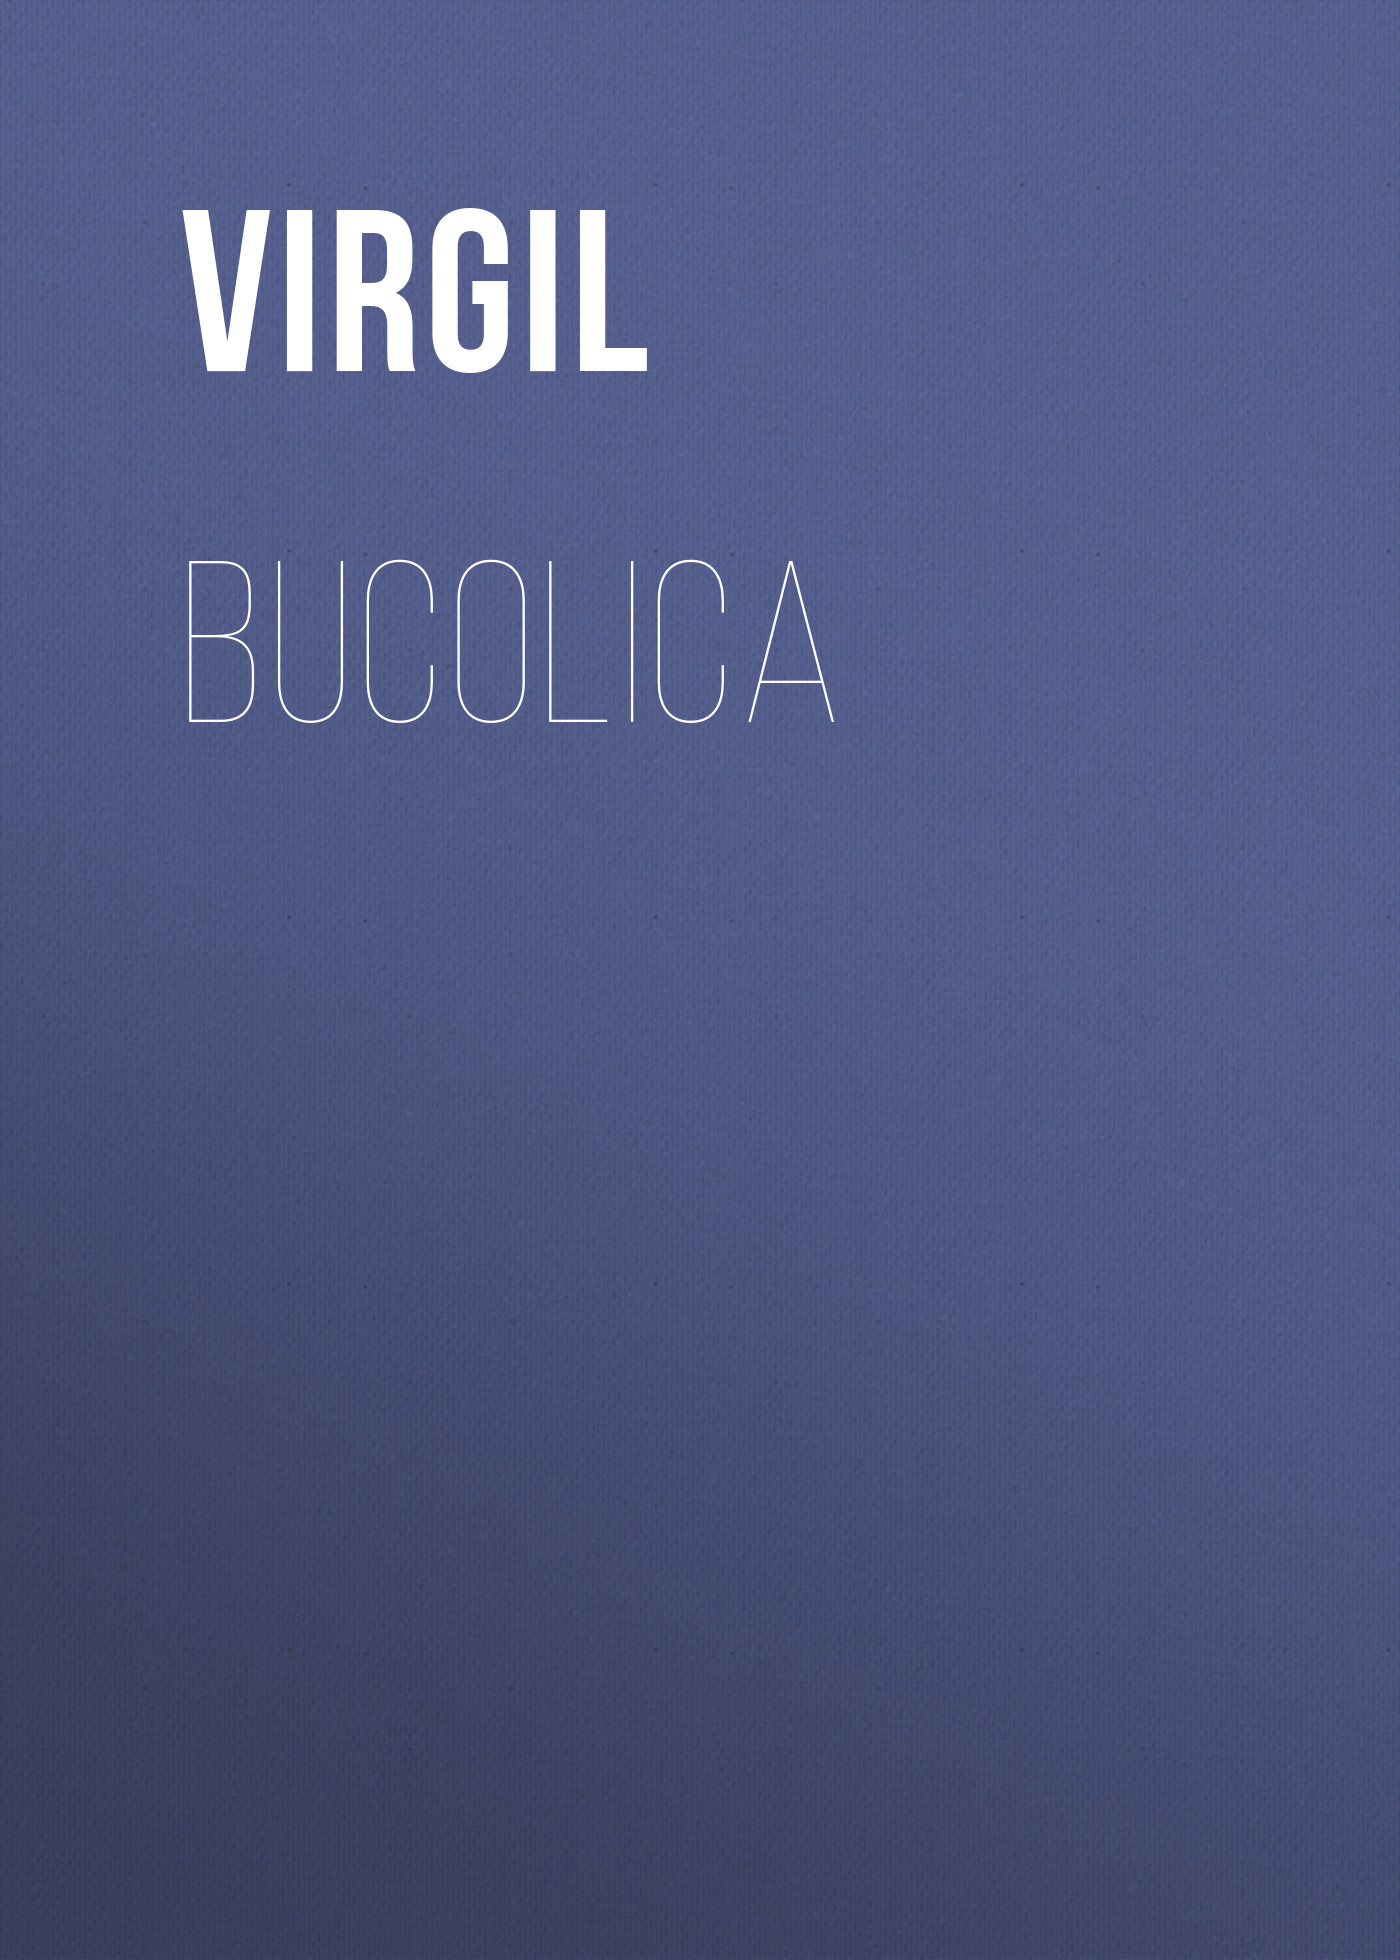 Книга Bucolica из серии , созданная  Virgil, может относится к жанру Зарубежные стихи, Поэзия, Зарубежная старинная литература, Зарубежная классика. Стоимость электронной книги Bucolica с идентификатором 34842846 составляет 0 руб.